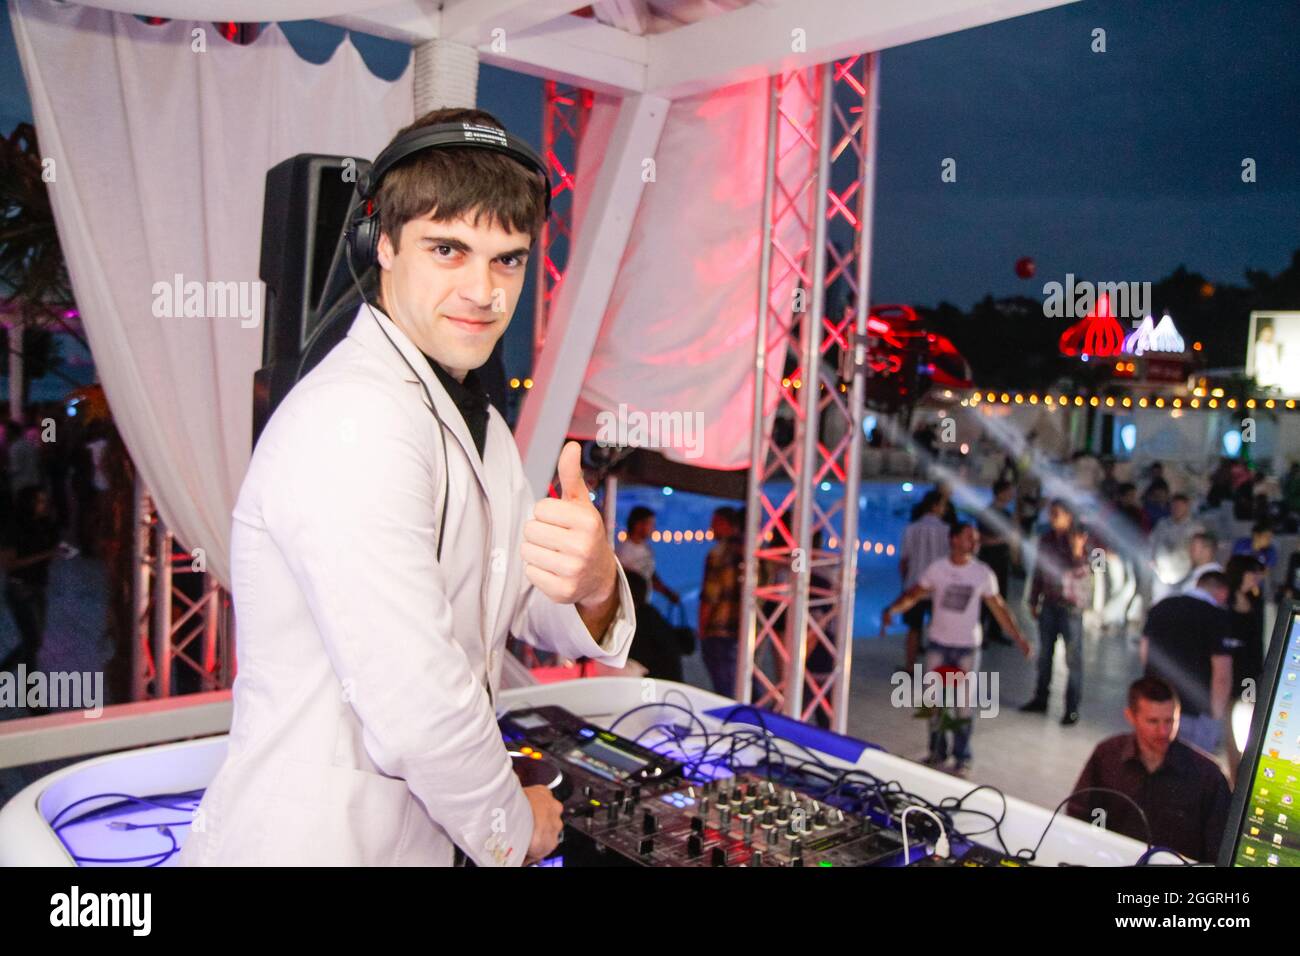 Odessa, Ukraine 24. Mai 2013: DJ bei der Arbeit im Luxus-Nachtclub während der Nachtparty. DJ feiern im Elite-Nachtclub. Stockfoto